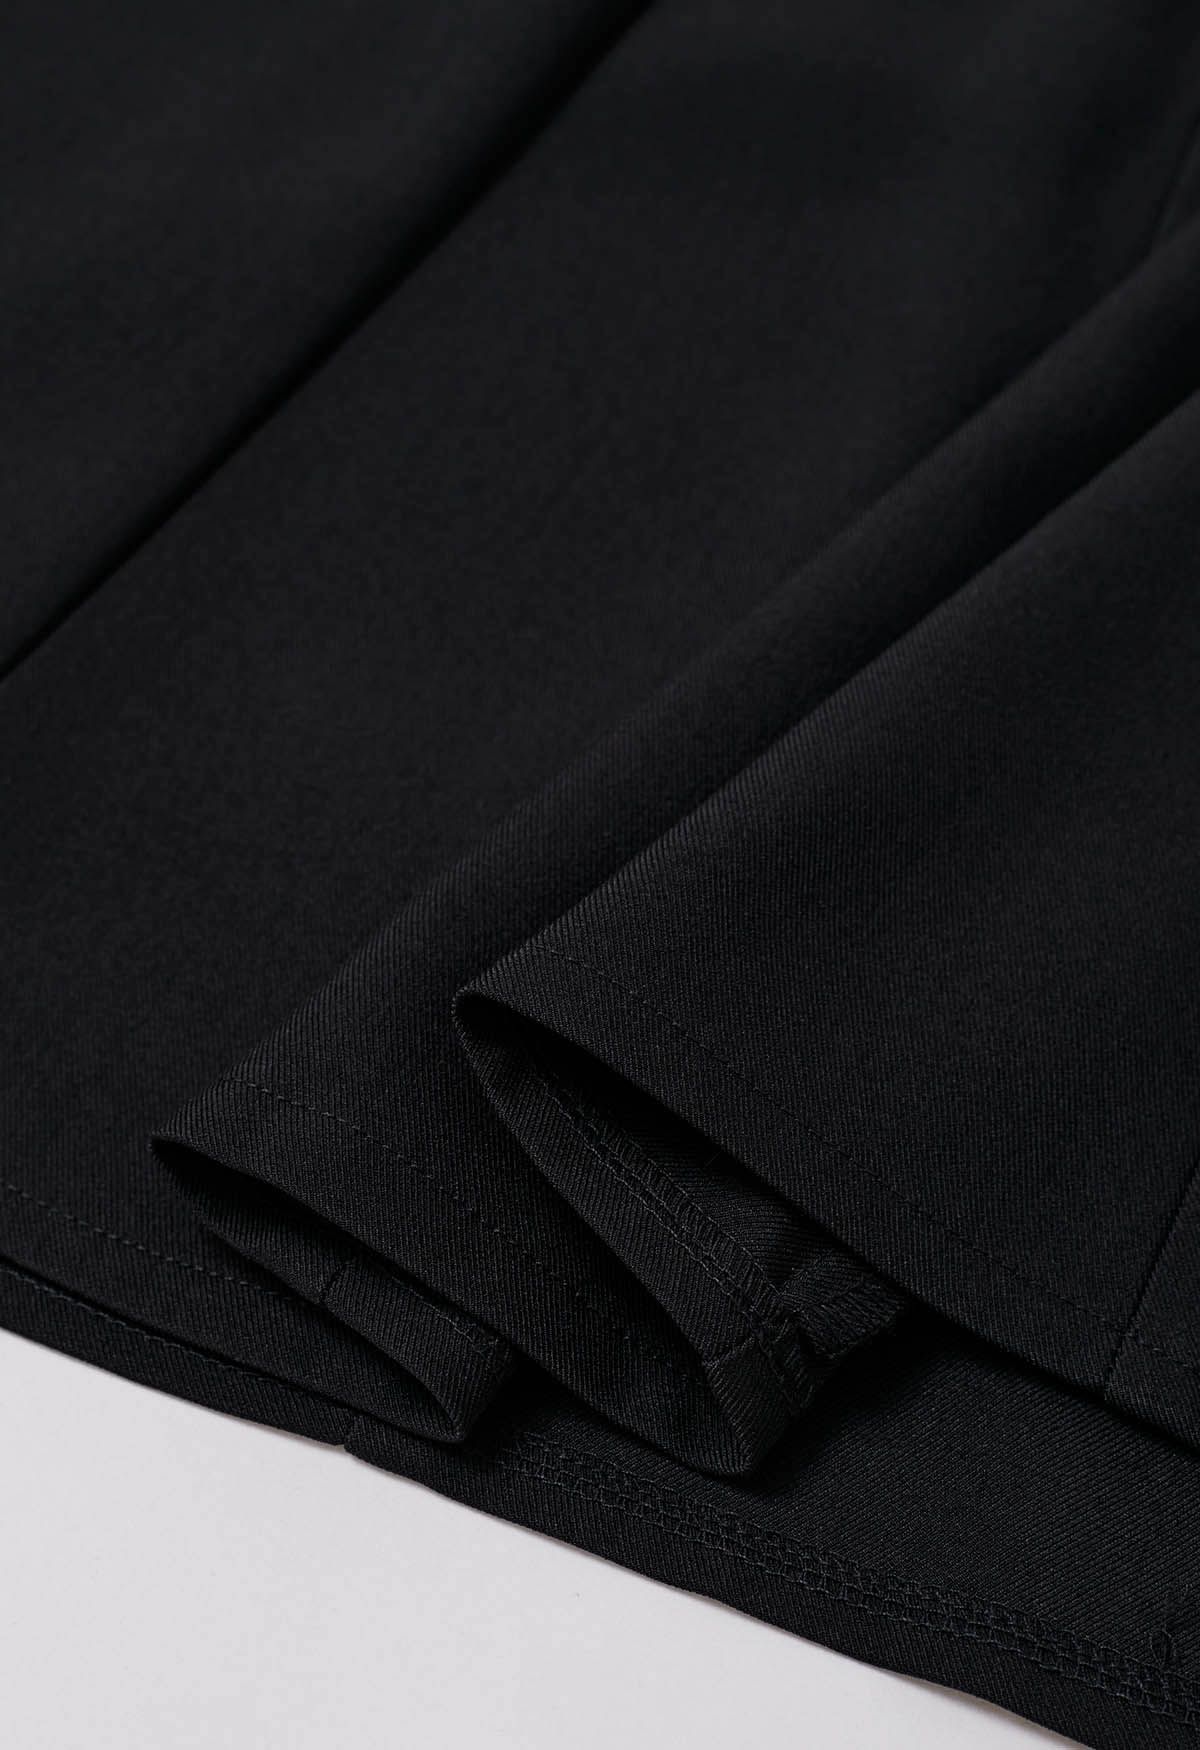 Falda midi con cinturón plisado en negro Refined